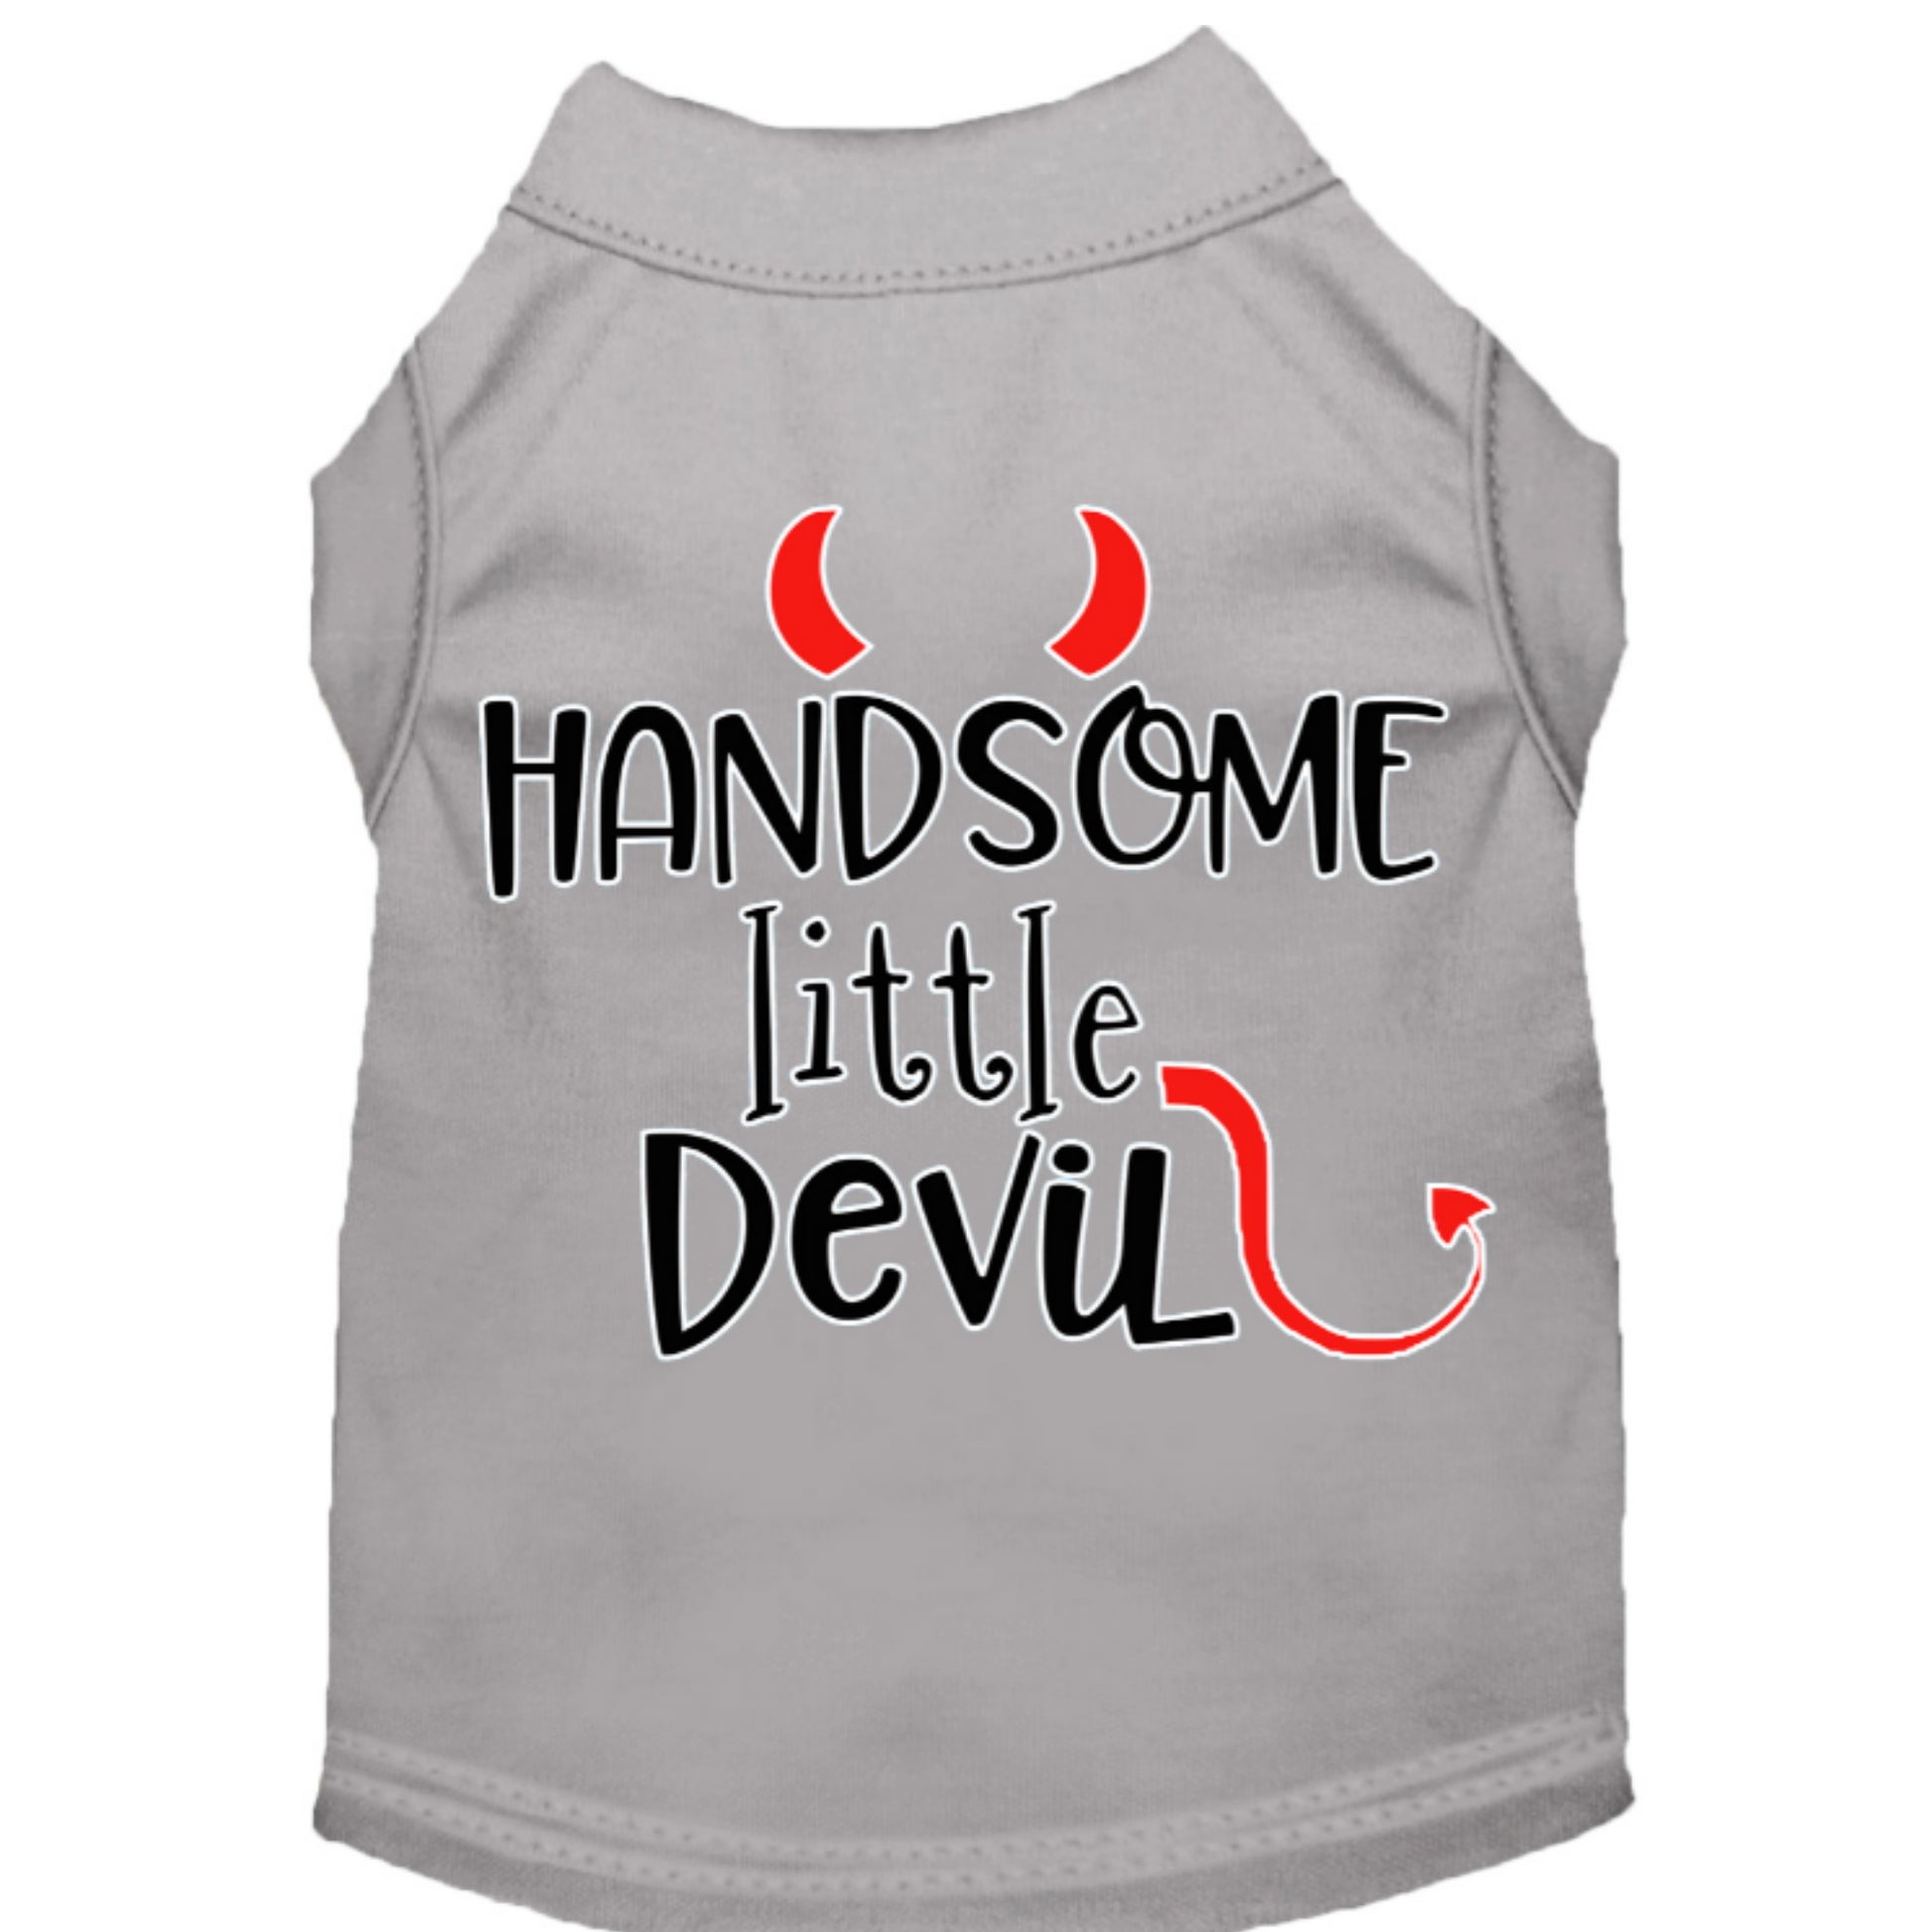 Handsome Little Devil Dog Shirt Grey